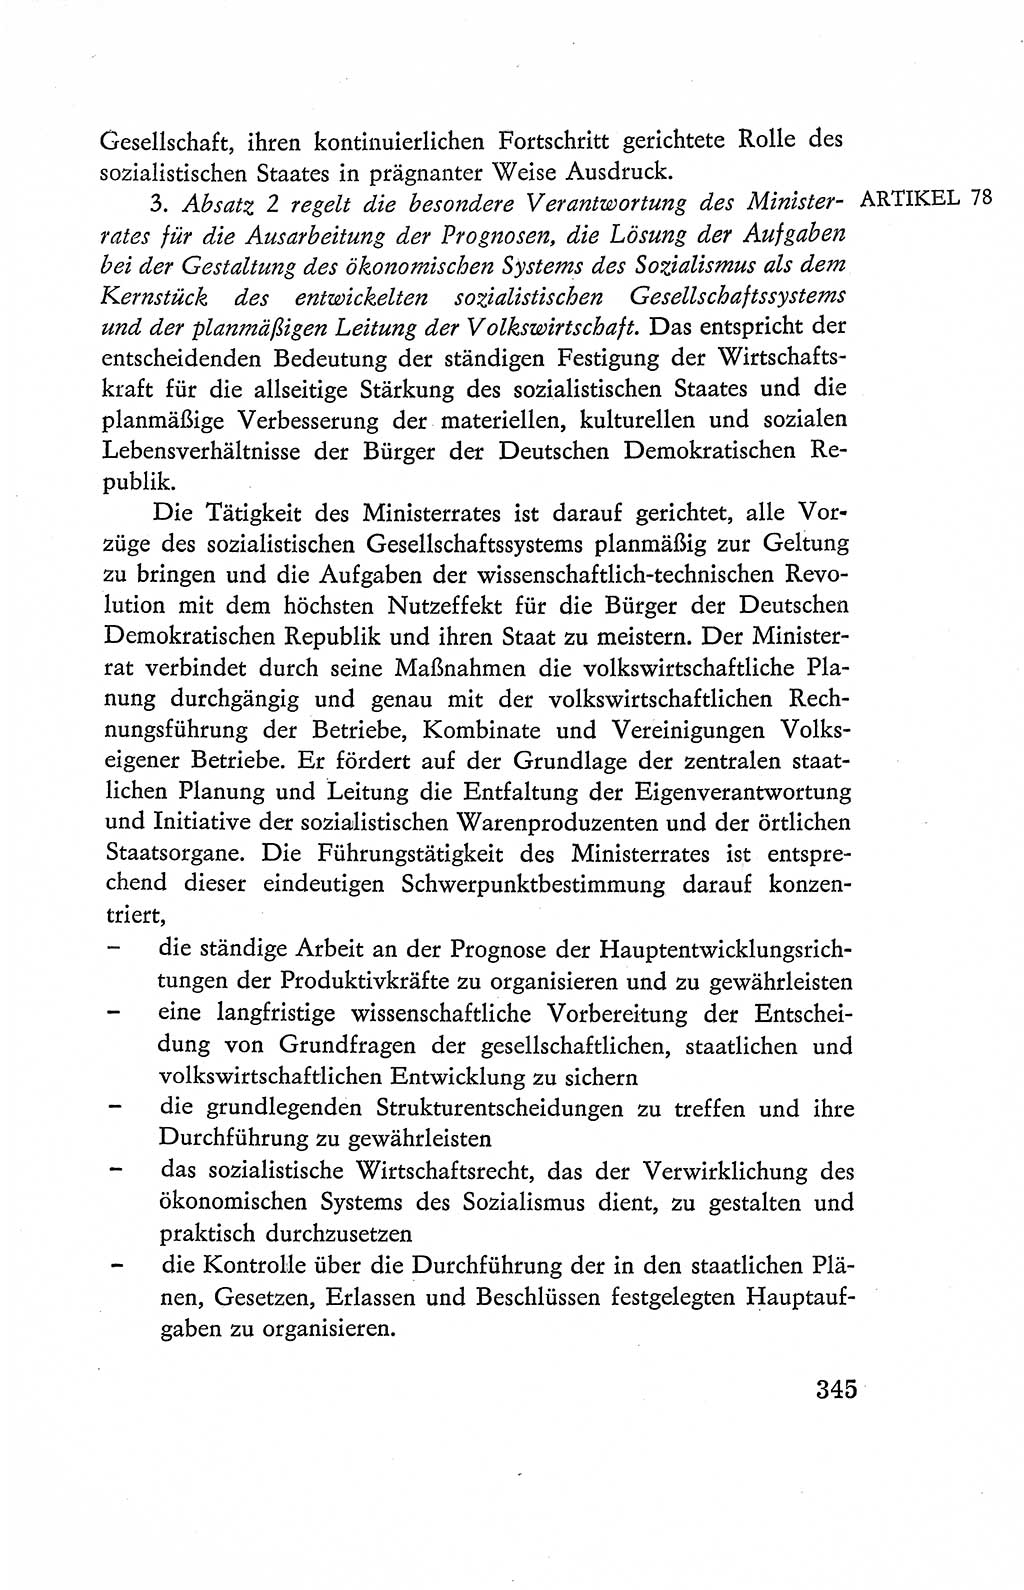 Verfassung der Deutschen Demokratischen Republik (DDR), Dokumente, Kommentar 1969, Band 2, Seite 345 (Verf. DDR Dok. Komm. 1969, Bd. 2, S. 345)